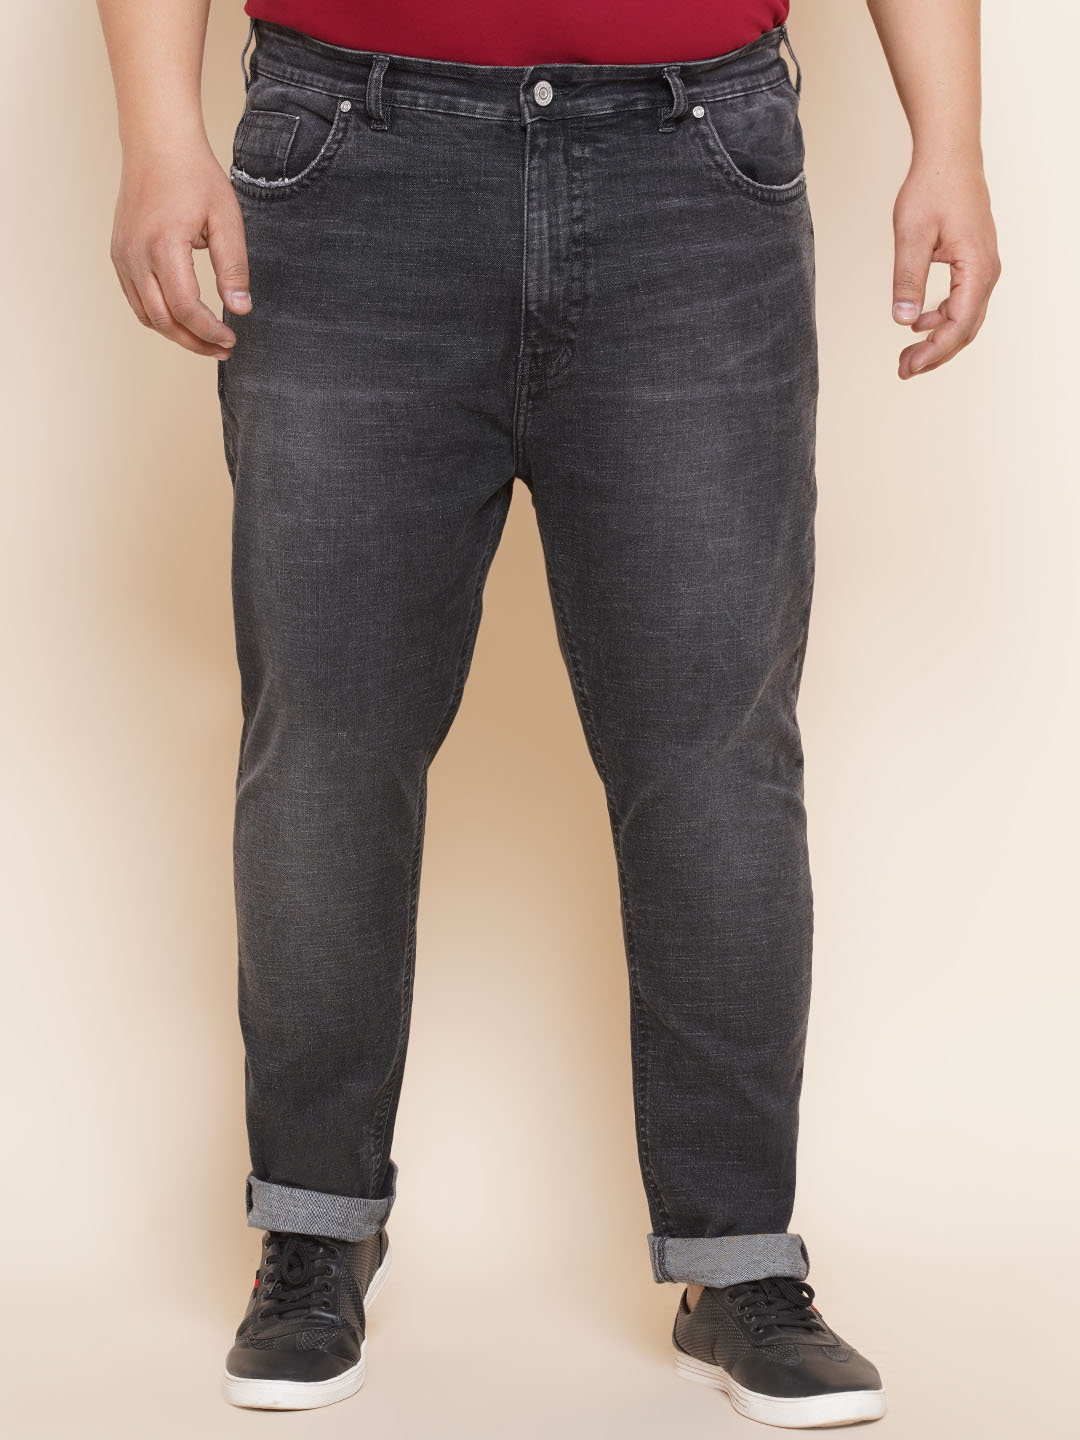 bottomwear/jeans/JPJ12295/jpj12295-1.jpg